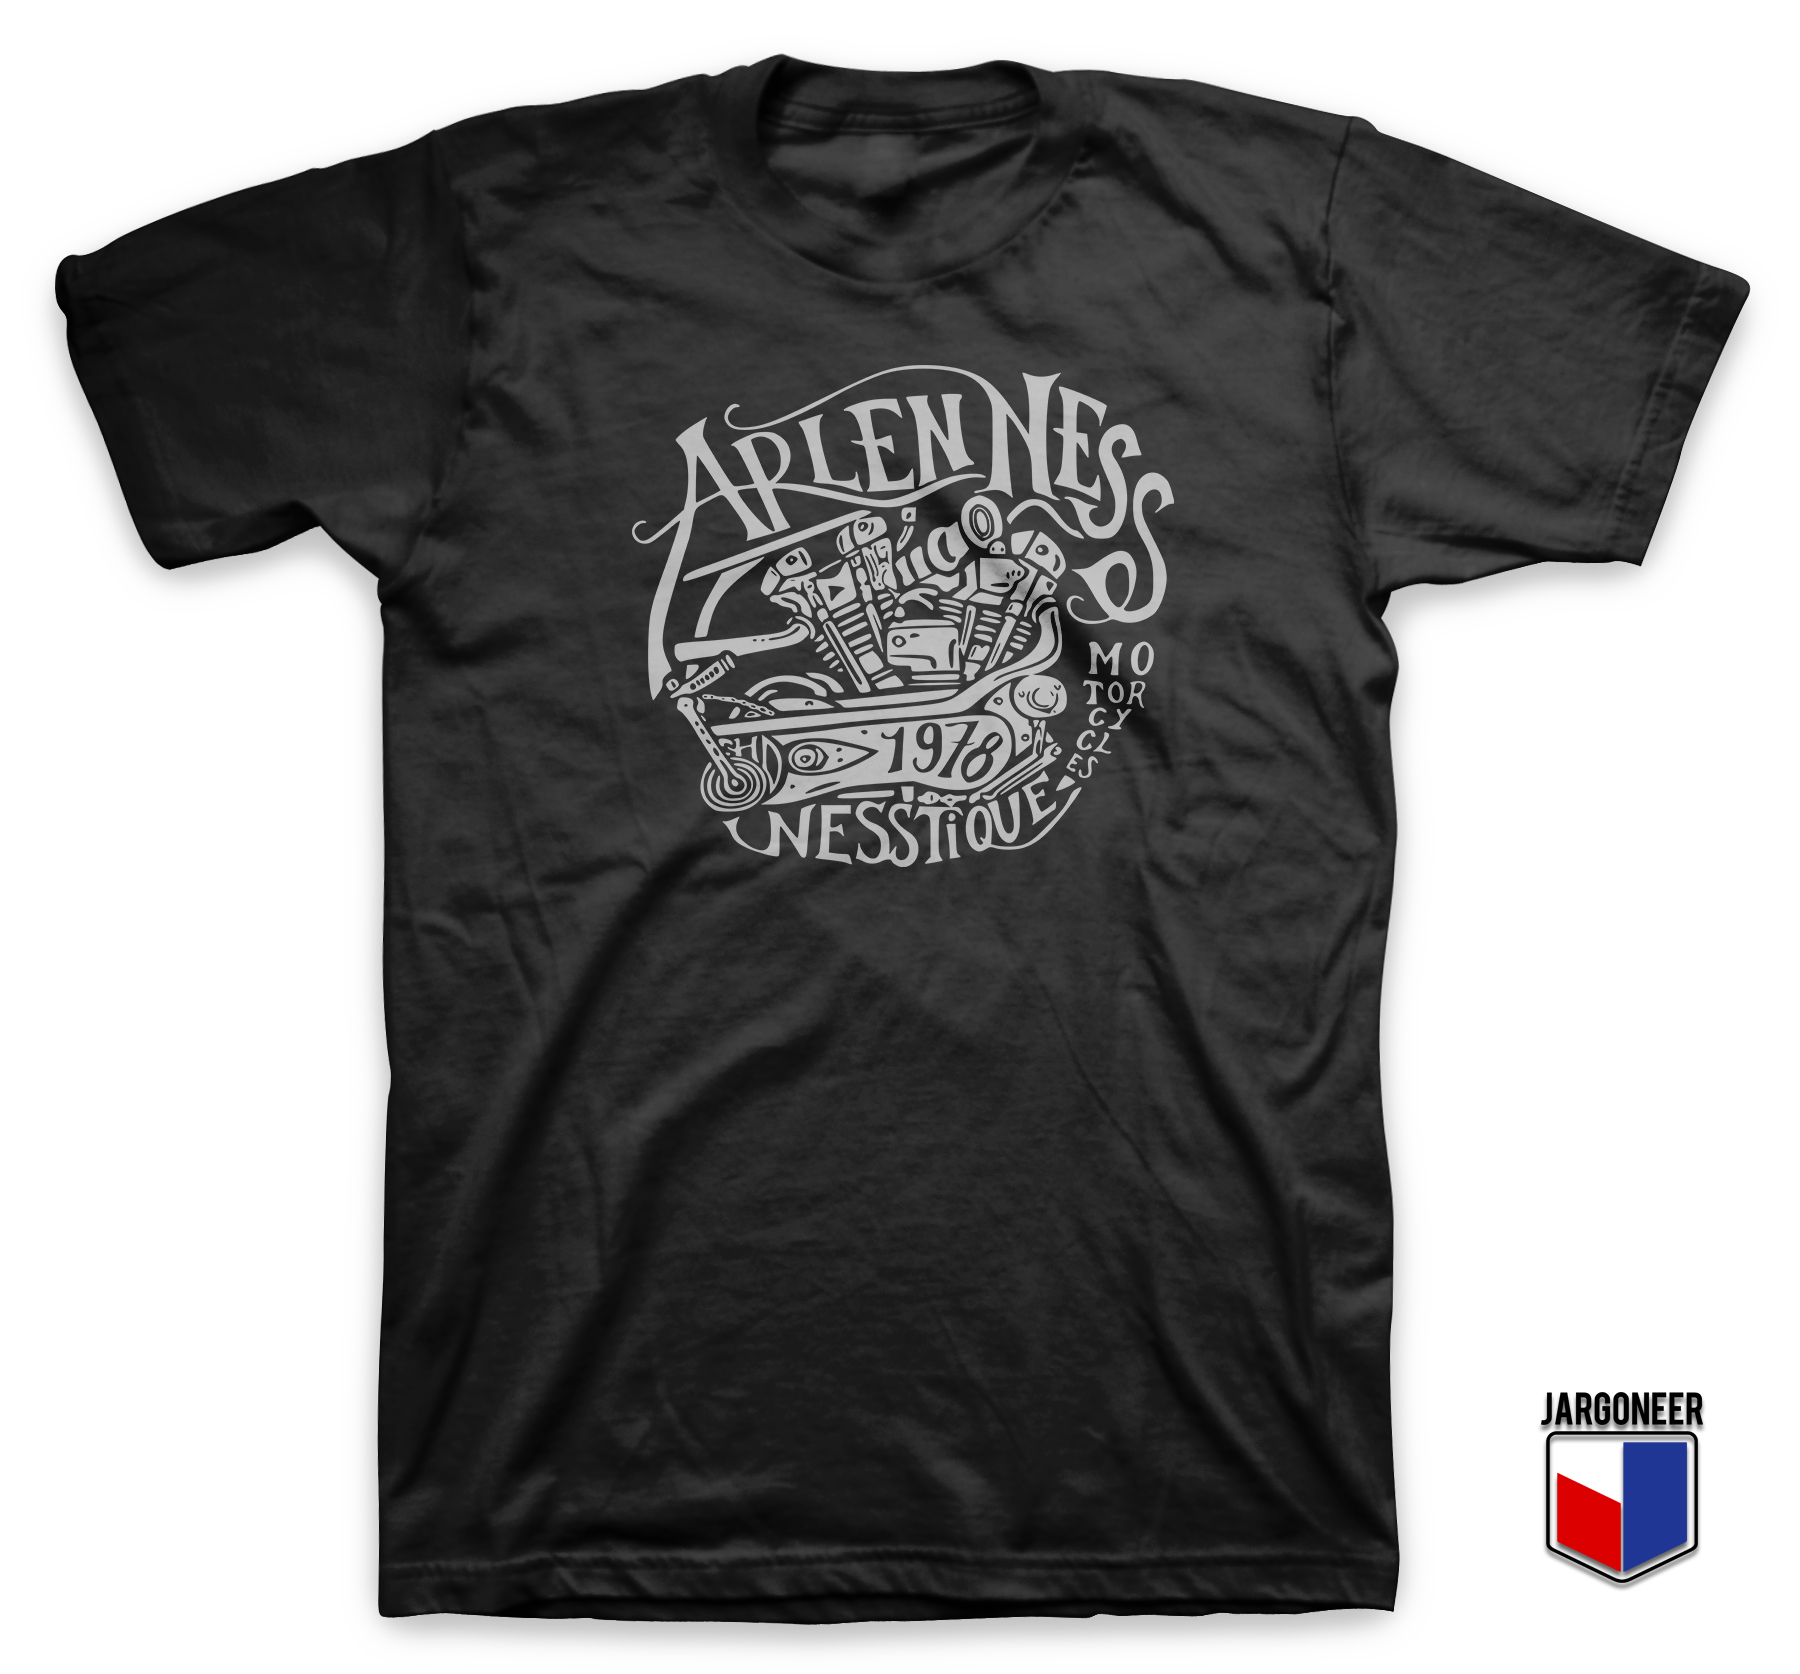 Arlen Ness Motorcycles Black T Shirt - Shop Unique Graphic Cool Shirt Designs